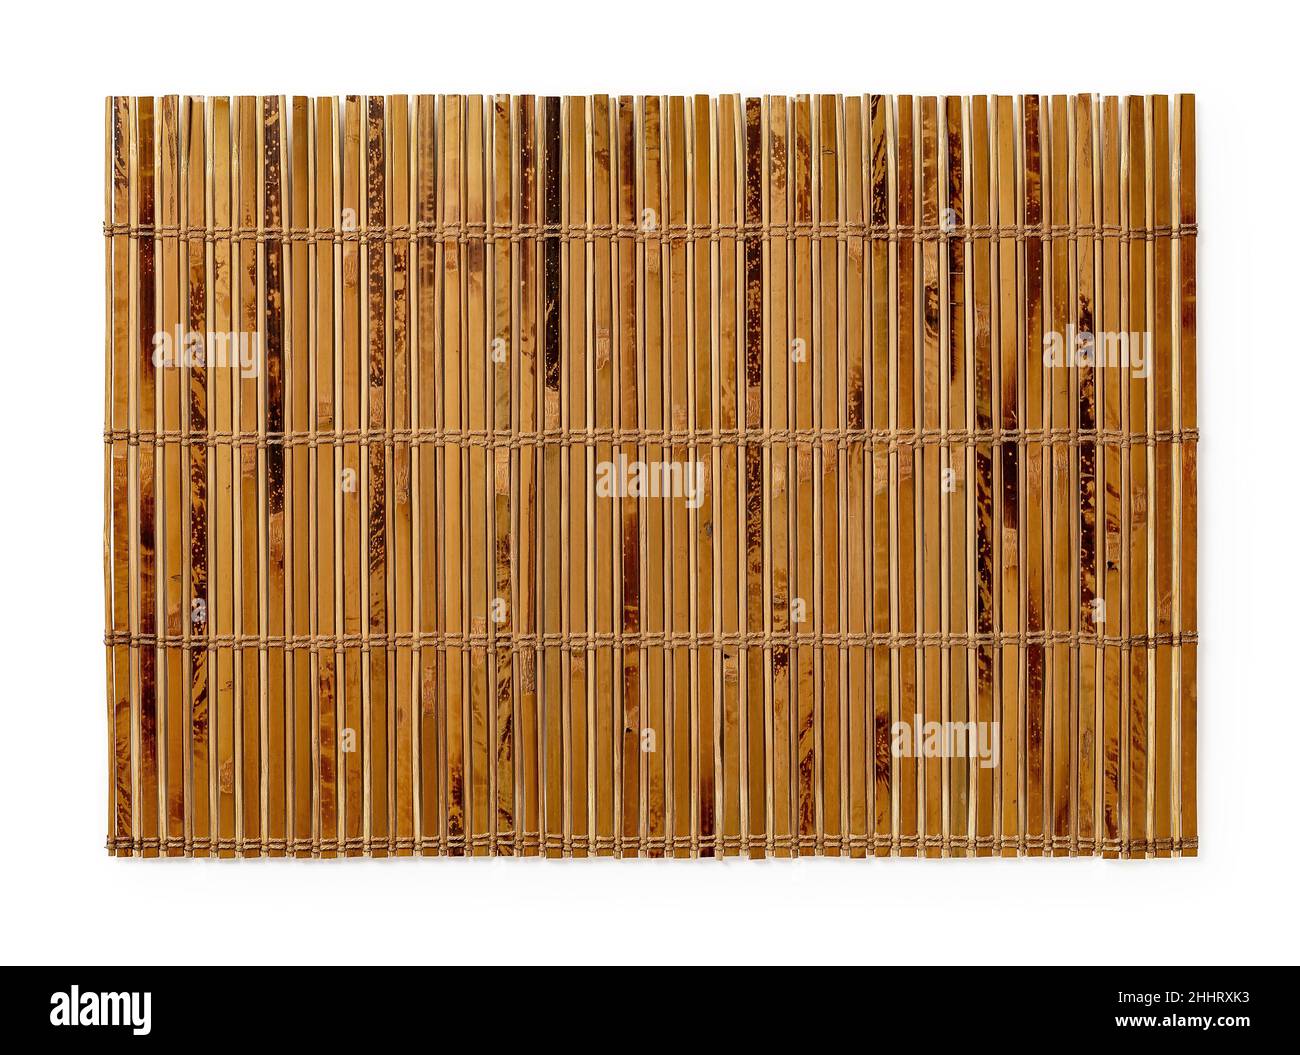 Gesprenkelte Bambus-Tischmatte isoliert auf weißem Hintergrund. Strukturierte Oberfläche aus braunem hölzernen Luncheon-Matte. Leeres Tischset für das Essen. Stockfoto